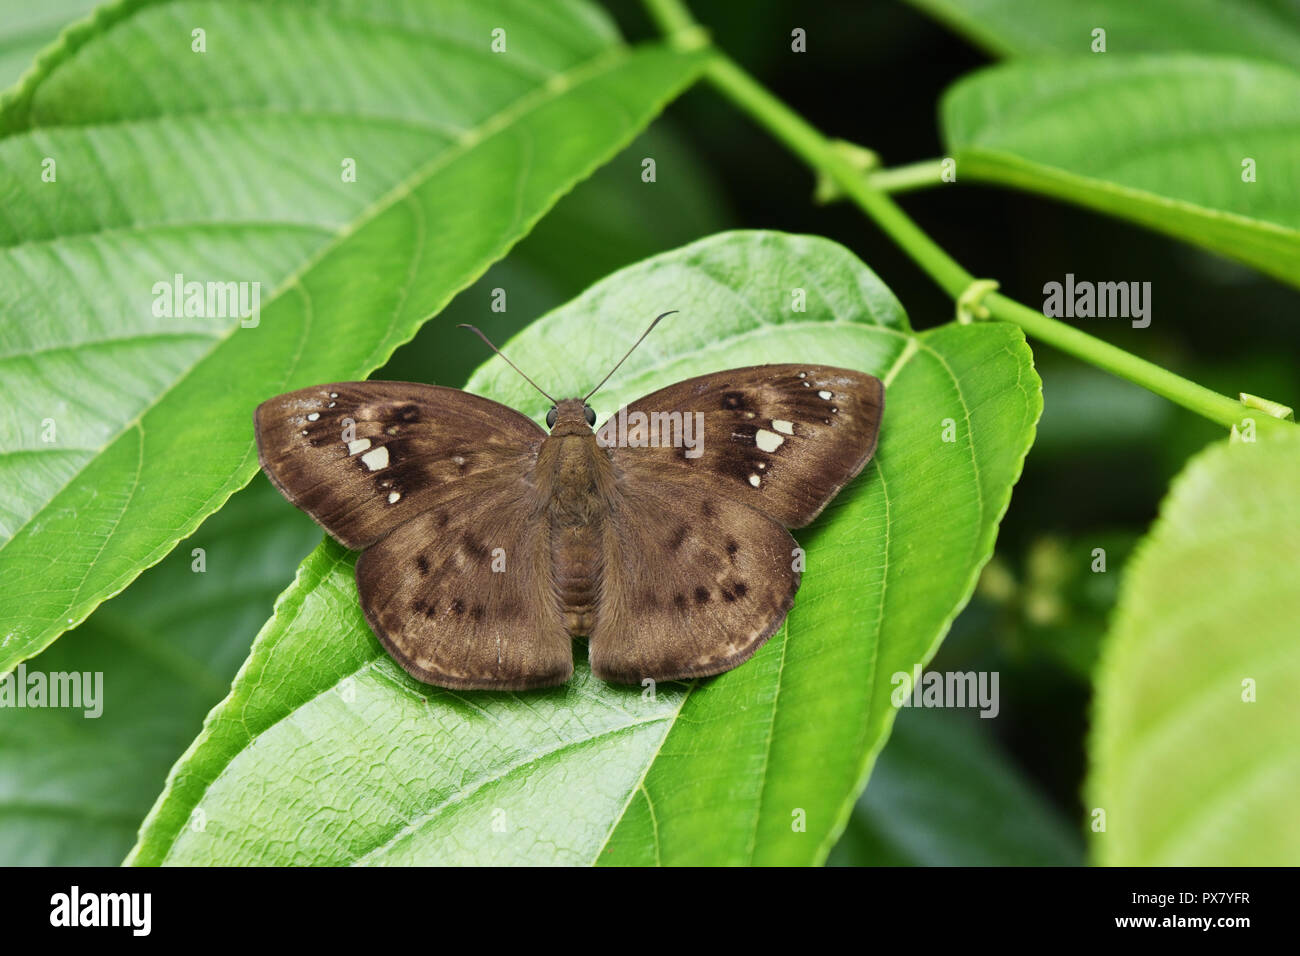 Manchas blancas y el patrón de color marrón oscuro en la aleta de la plana de nieve común mariposa de hojas verdes , Tailandia Foto de stock